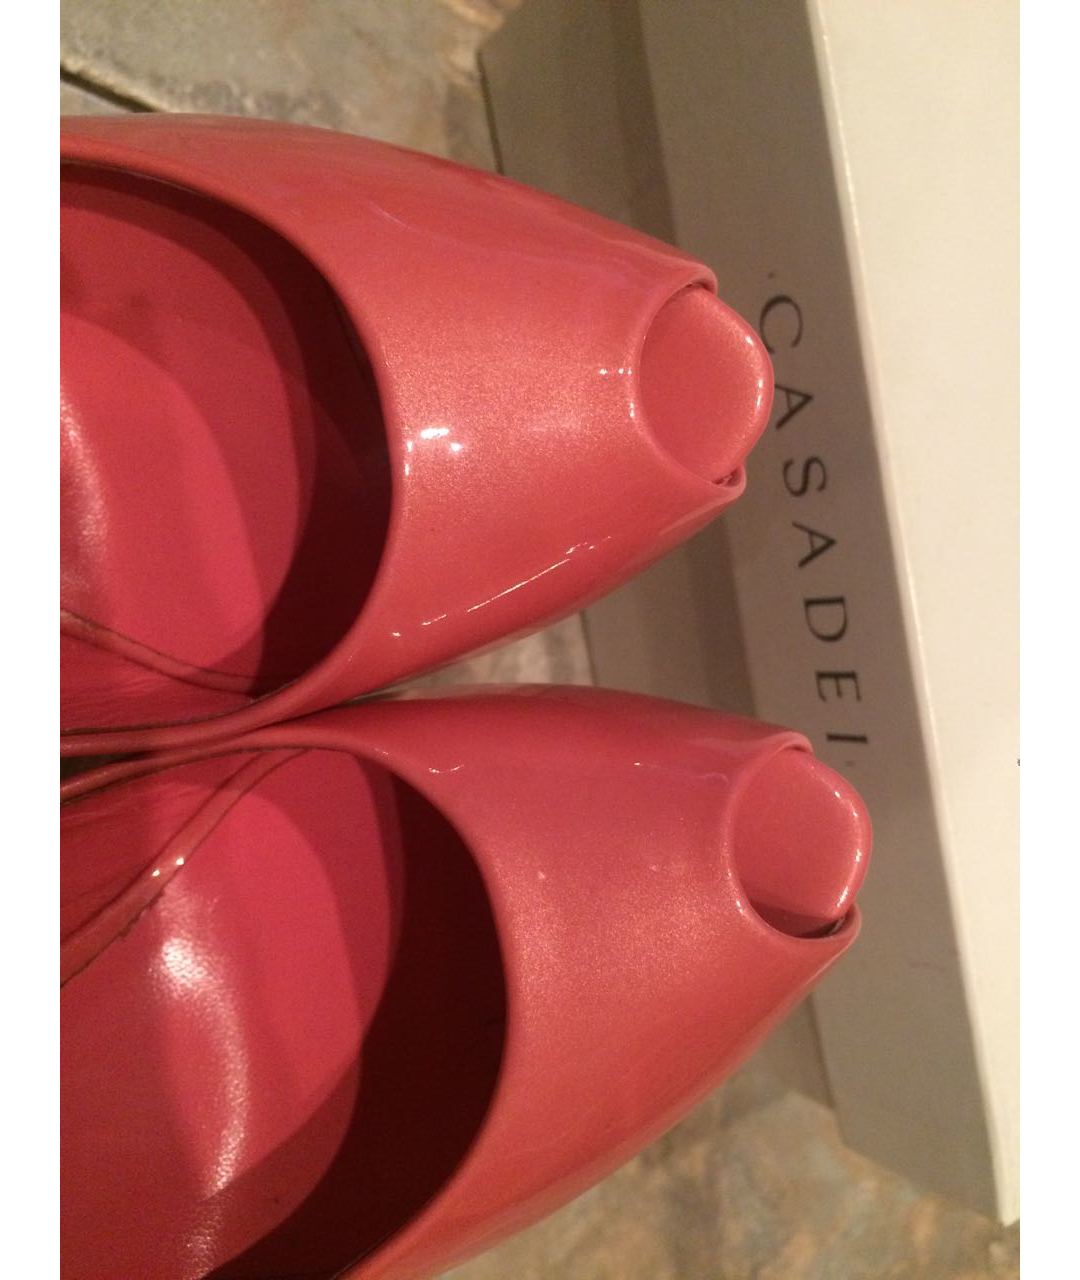 CASADEI Розовые кожаные туфли, фото 4